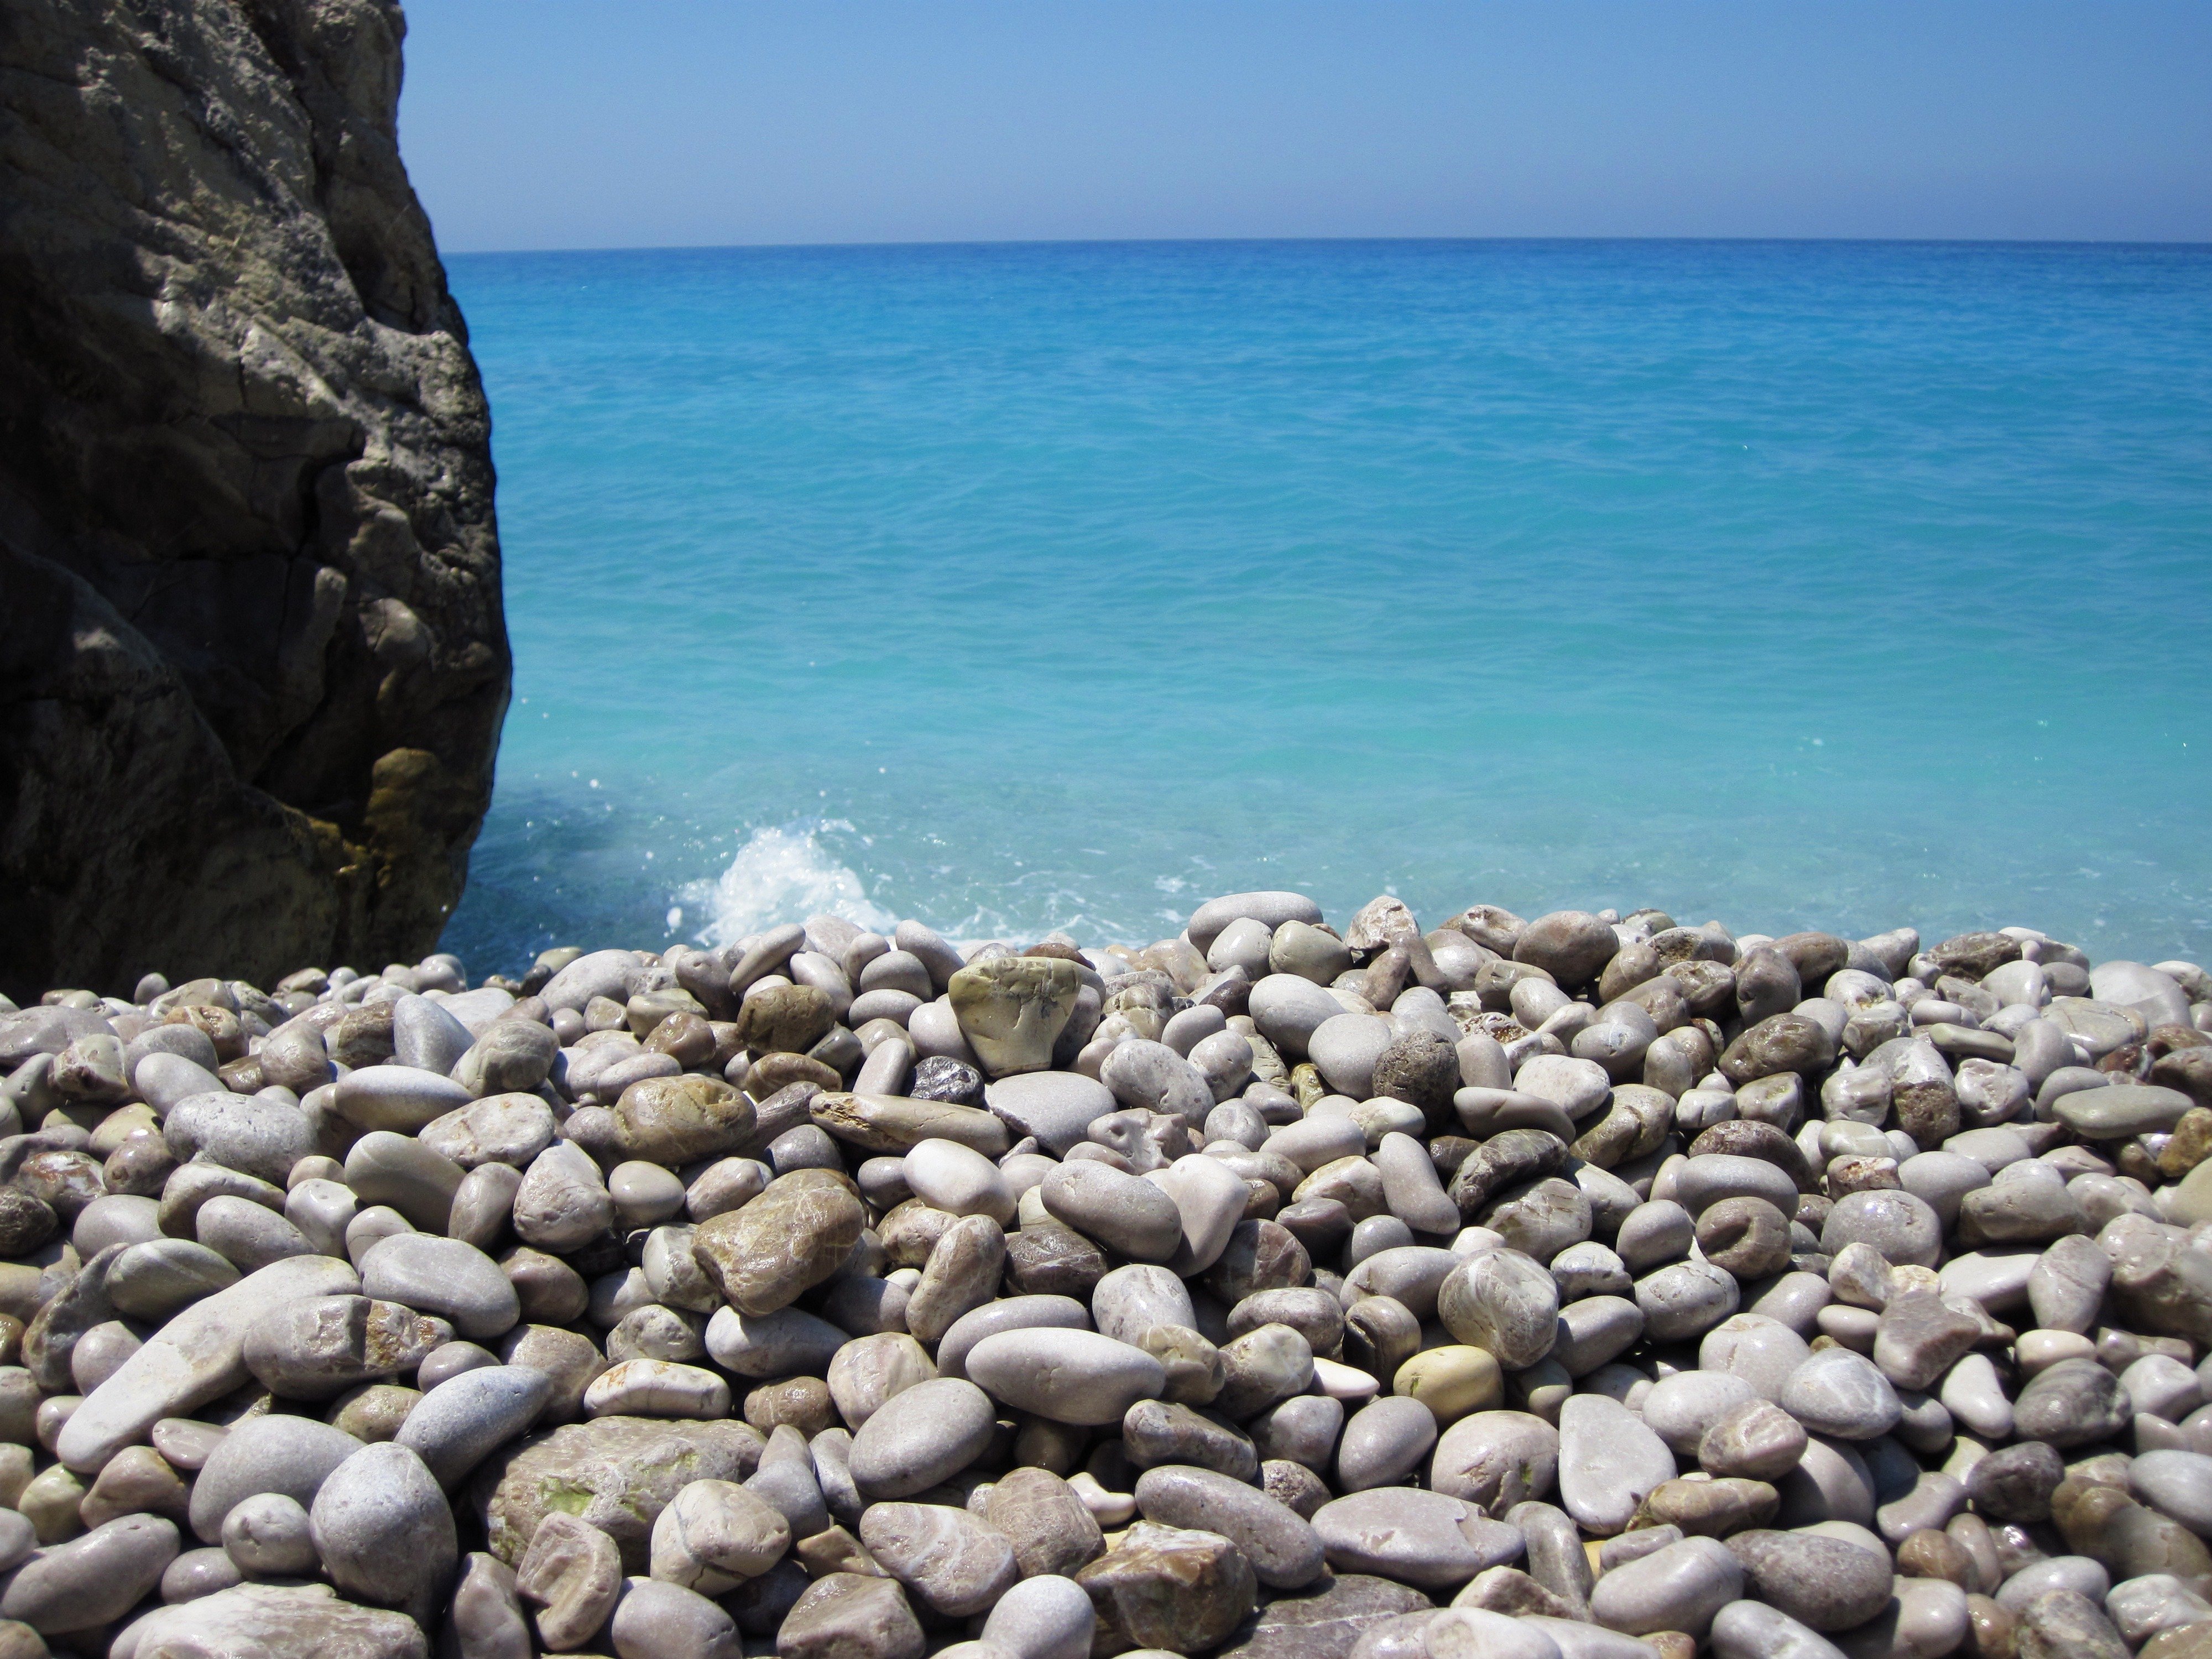 Wet stone. Галечный пляж Корсика. Галечный пляж Сочи. Галечный пляж Анапа камни.